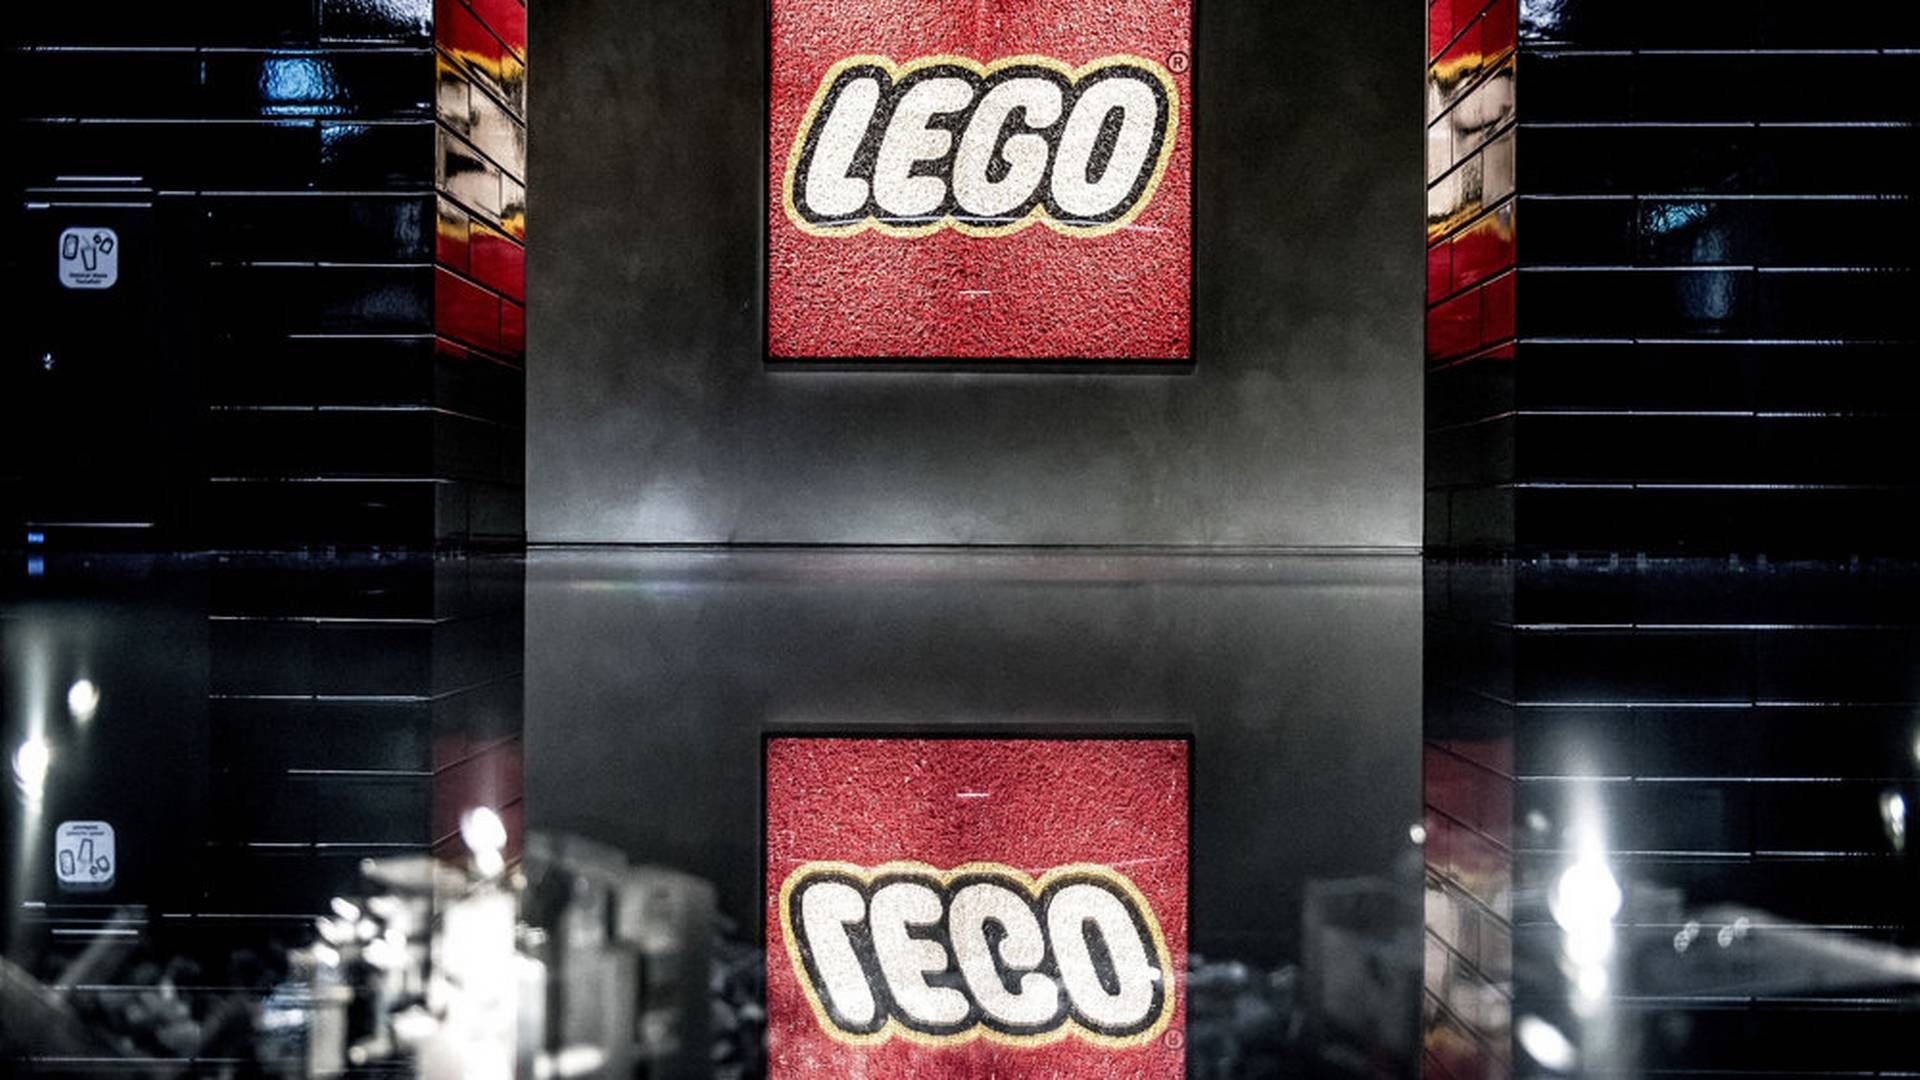 En tidligere ansat ved Lego og en indehaver af et fynsk el-firma orkestrerede svindel mod Lego for millioner af kroner. Landsretten har nu sat straffen i sagen op. | Foto: Mads Claus Rasmussen/Ritzau Scanpix